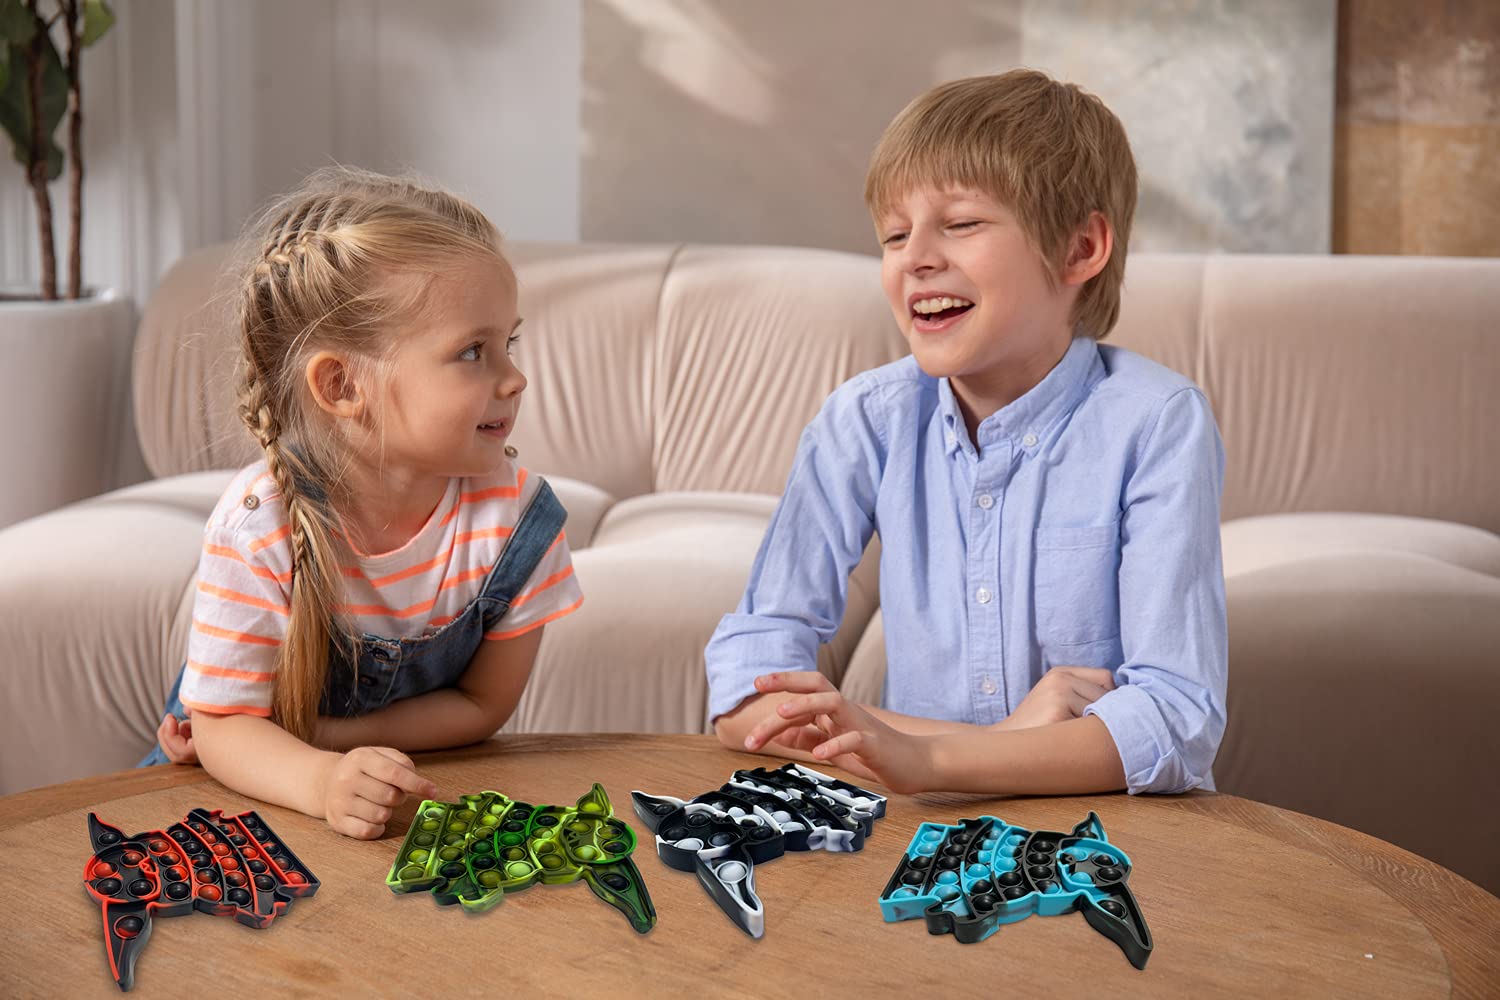 LAVONE Fidget Toys, Push Bubble Fidgets Sensory Toy, Stress Relief Pop Fidget Toy for Kids Adults - Olive Drab